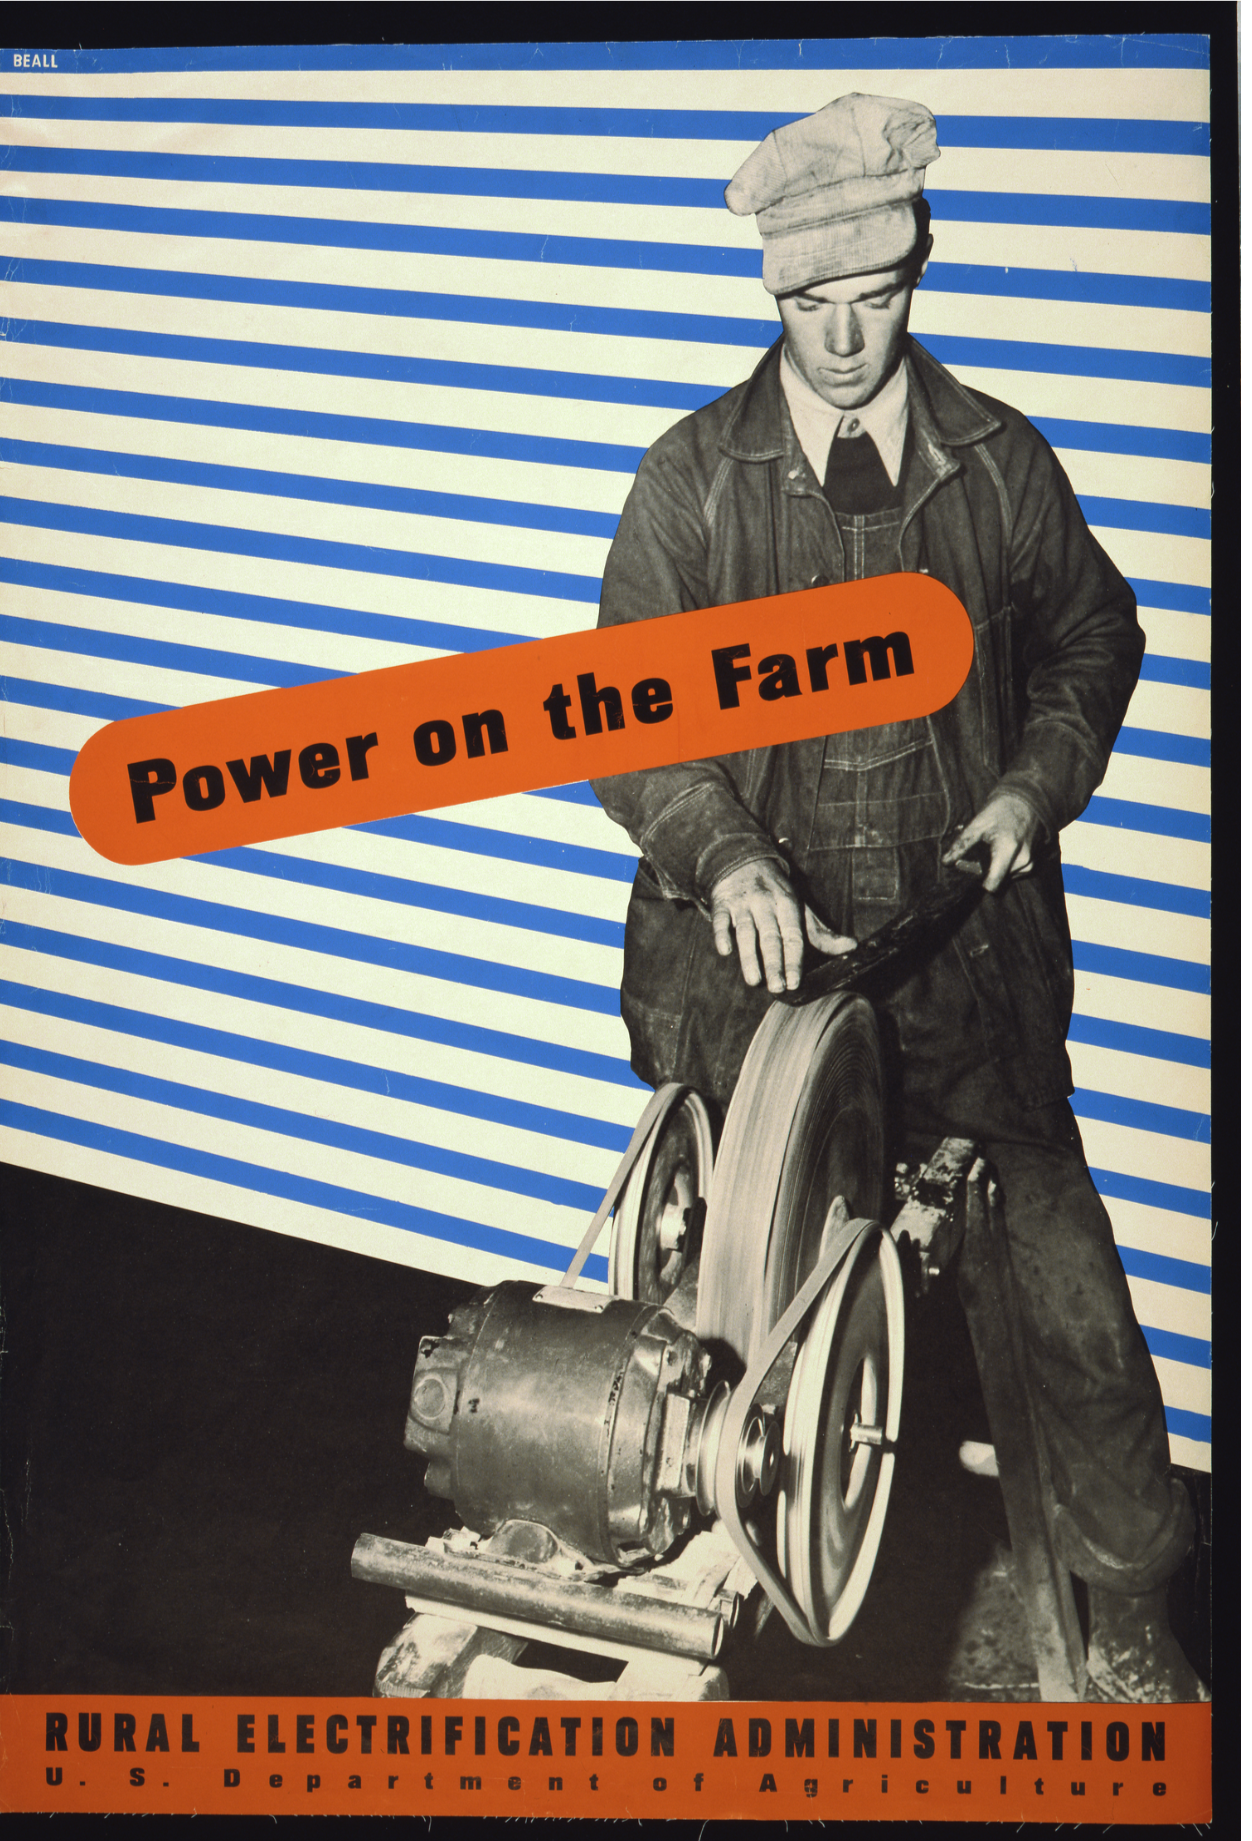 Power on the Farm, Administración de Electrificación Rural, Departamento de Agricultura de EE. UU. por Lester Beall, 1930 - Postal